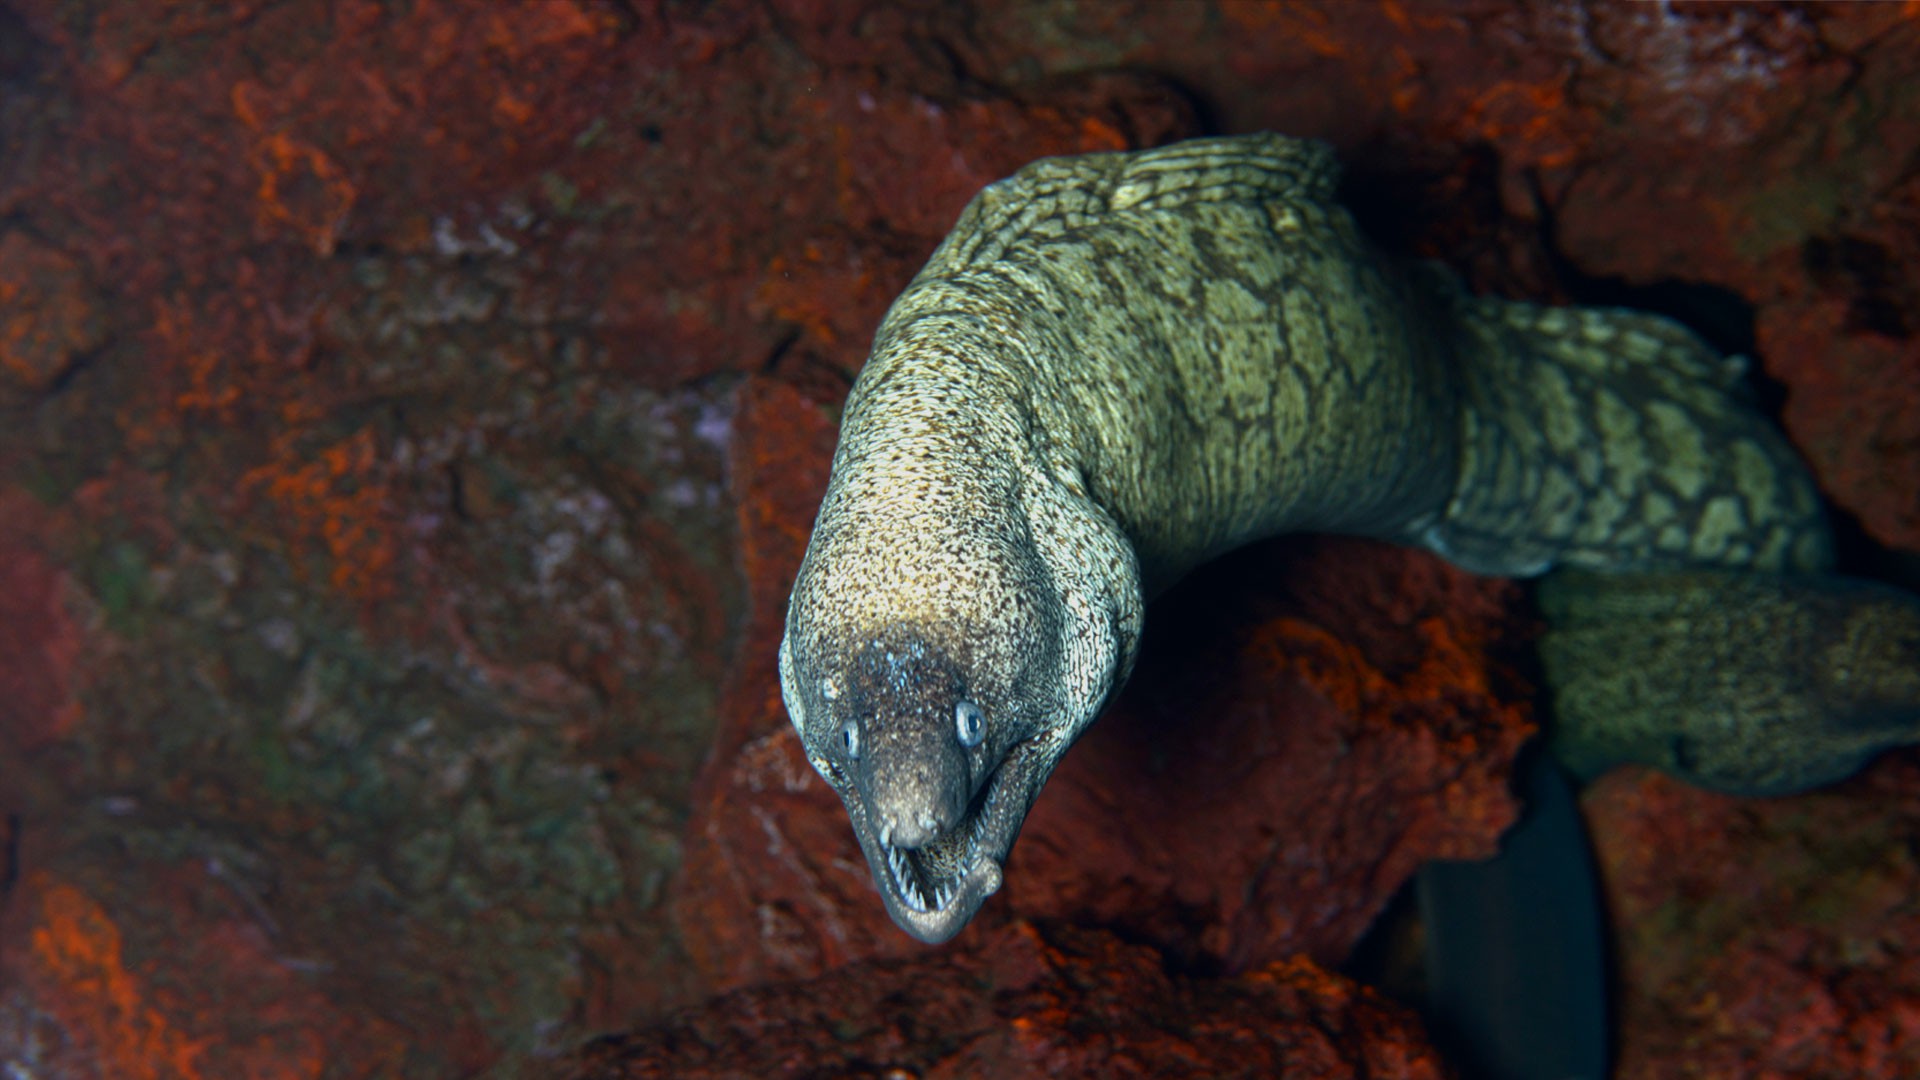 Moray eels